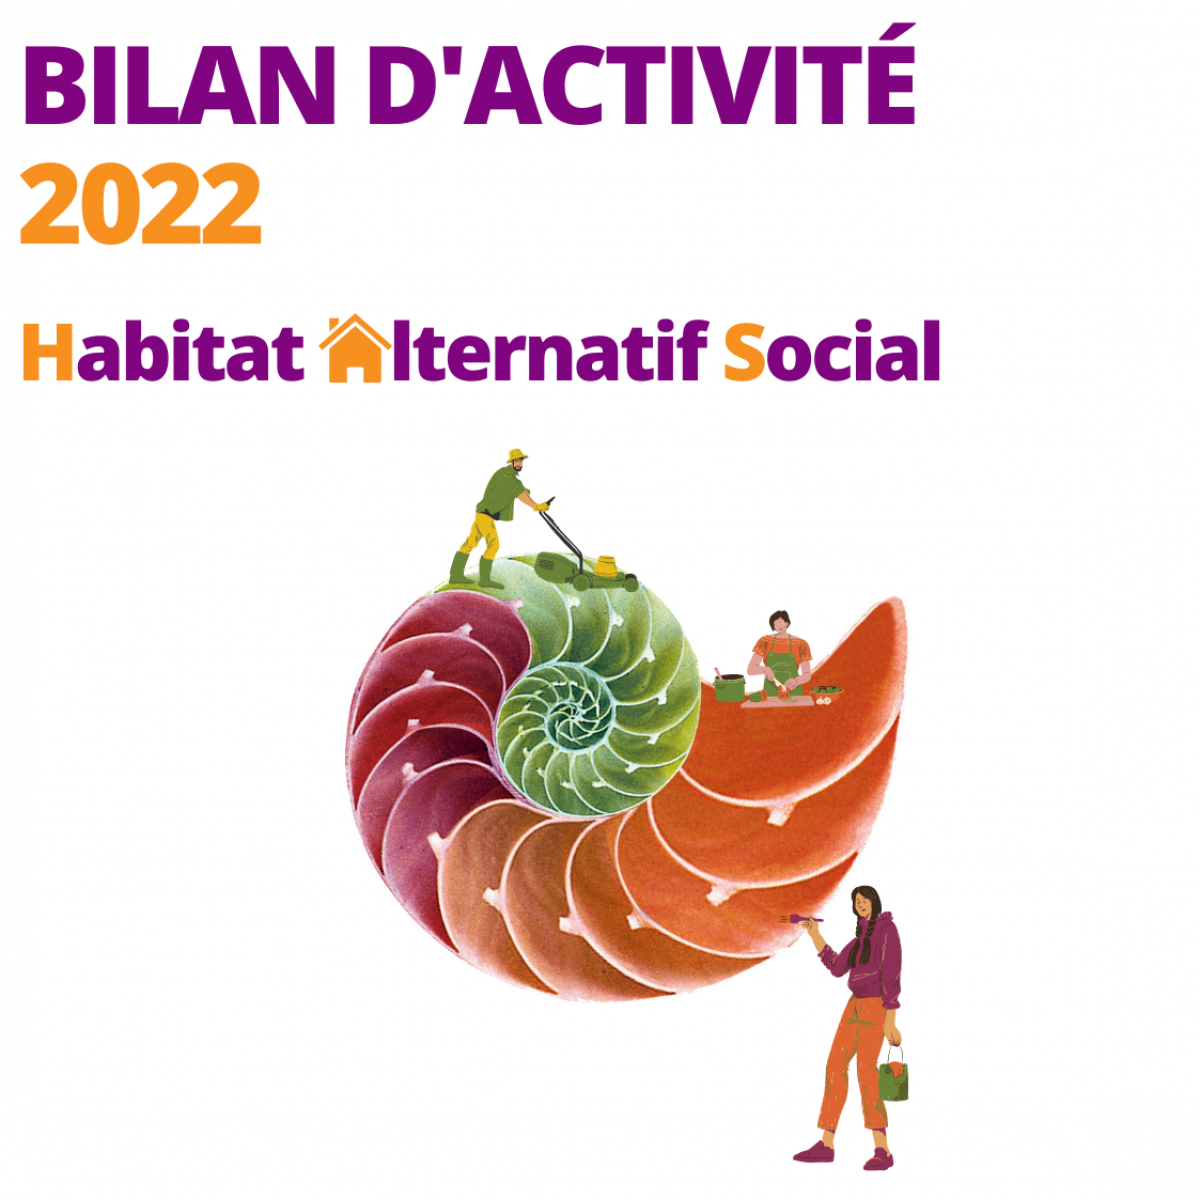 BILAN D'ACTIVITE 2022